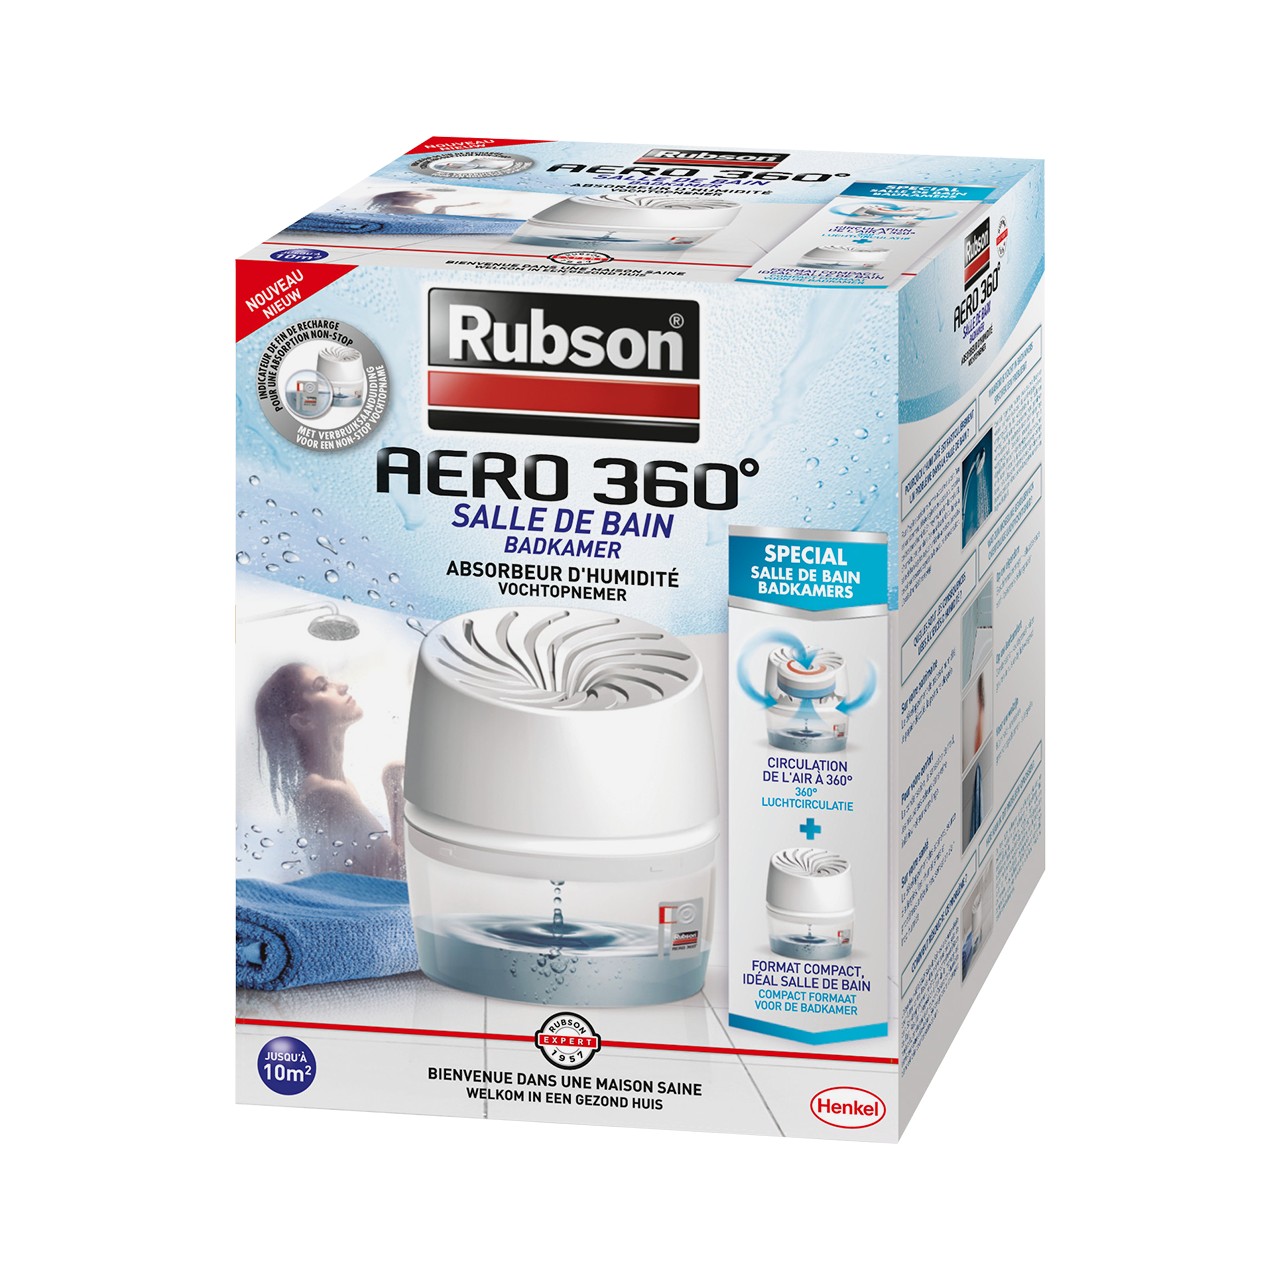 RUBSON Recharges pour absorbeur d'humidité aero 360° - 2 pc - Tecniba